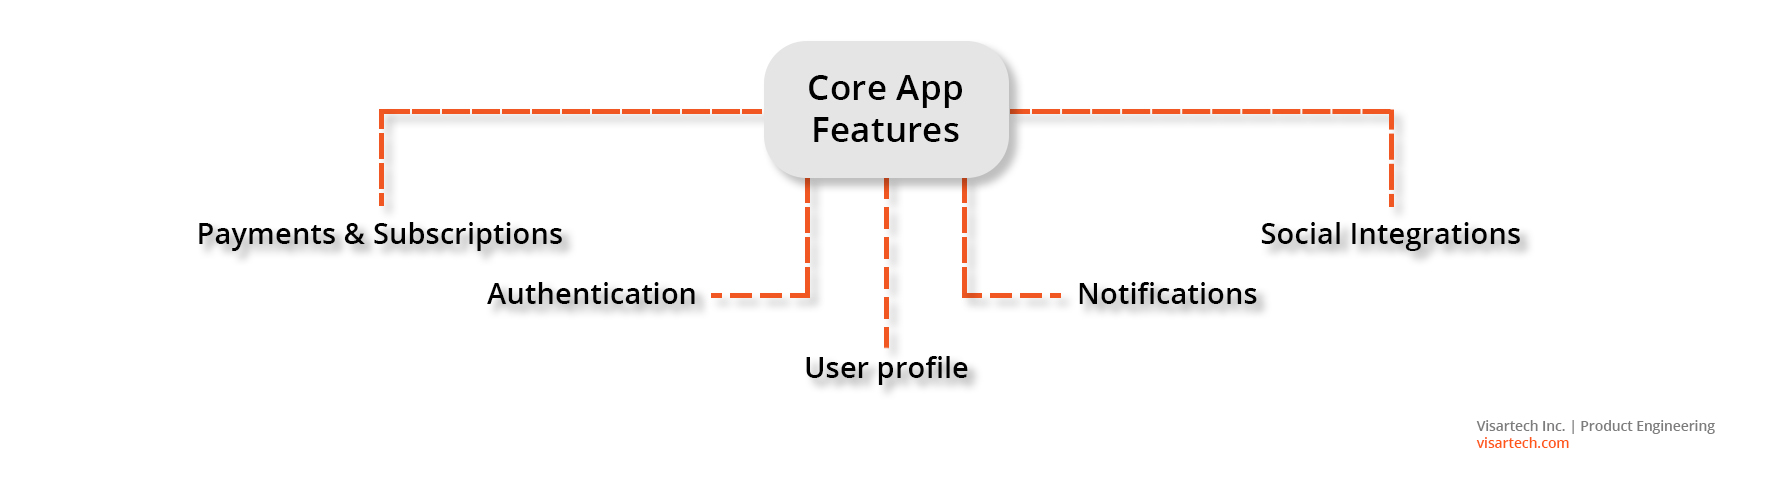 Core App Features - Visartech Blog